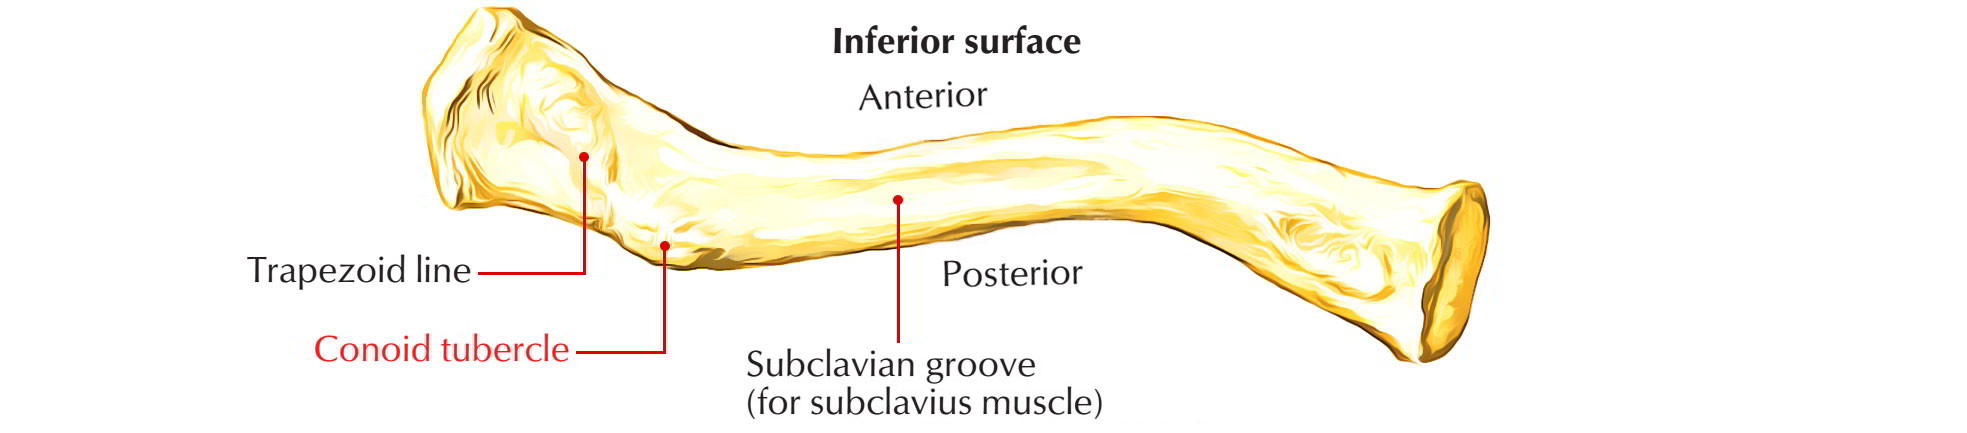 Bones of Upper Limb: Clavicle